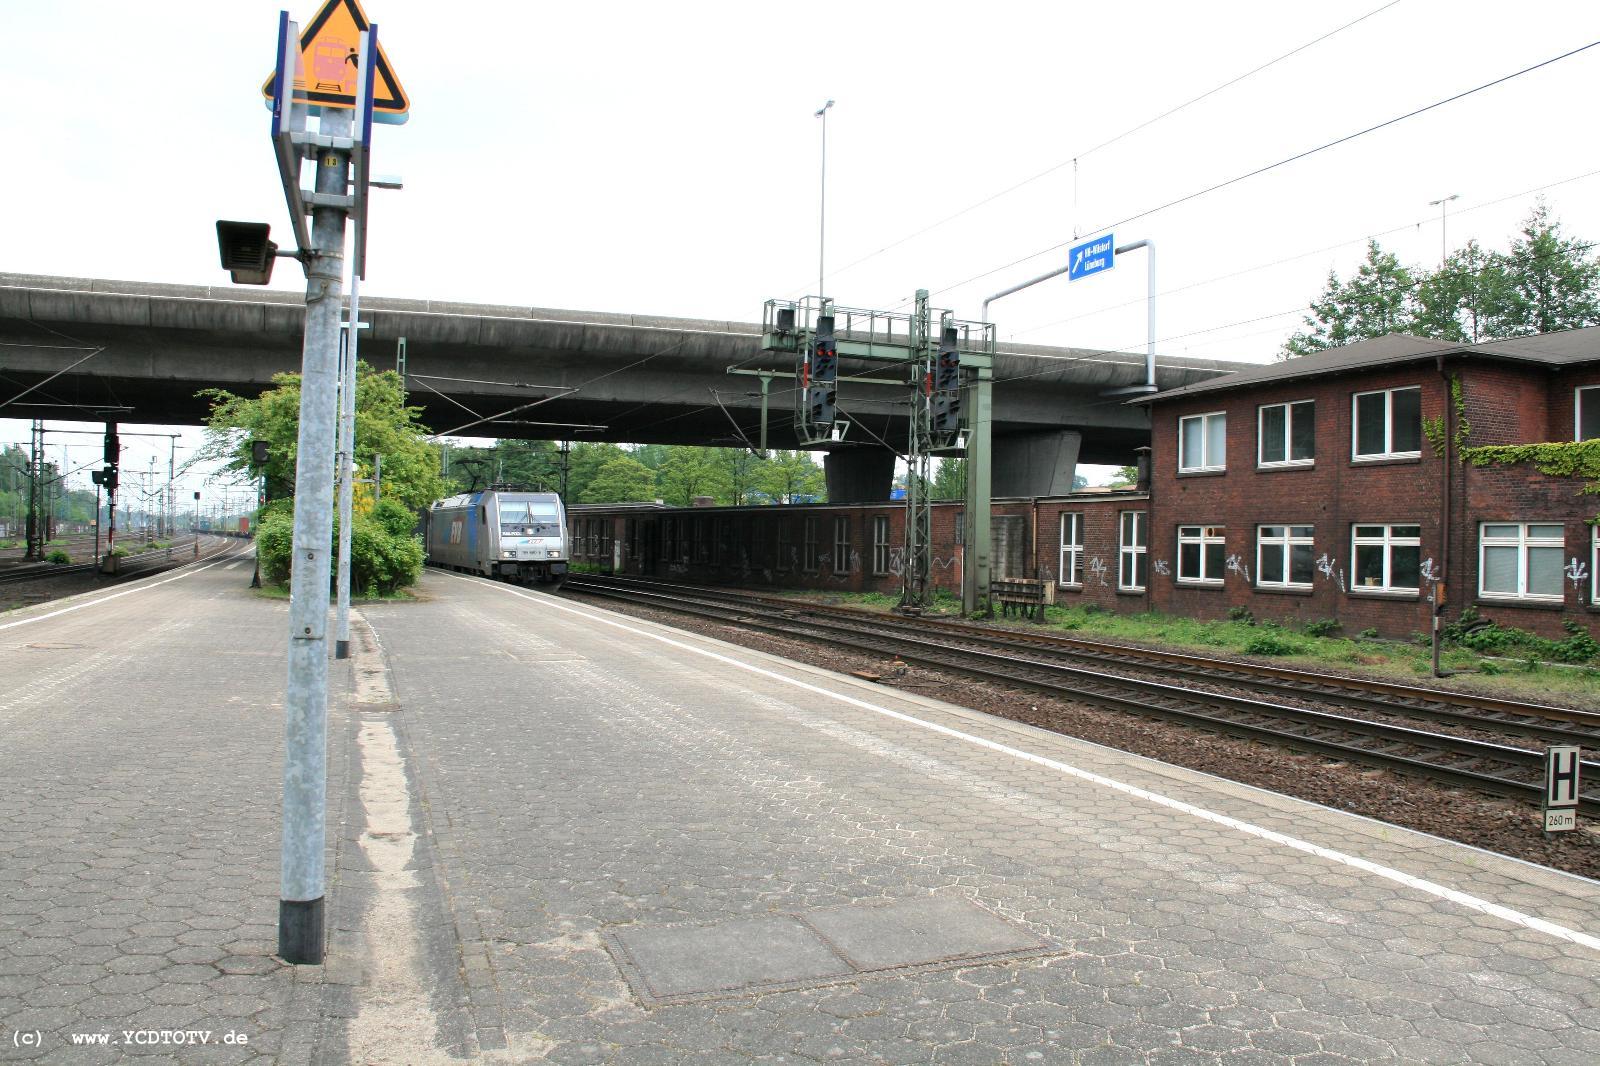  Bahnhof Hamburg-Harburg, 18.05.2011, Blick vom Bahnsteig 5 Richtung Sden 